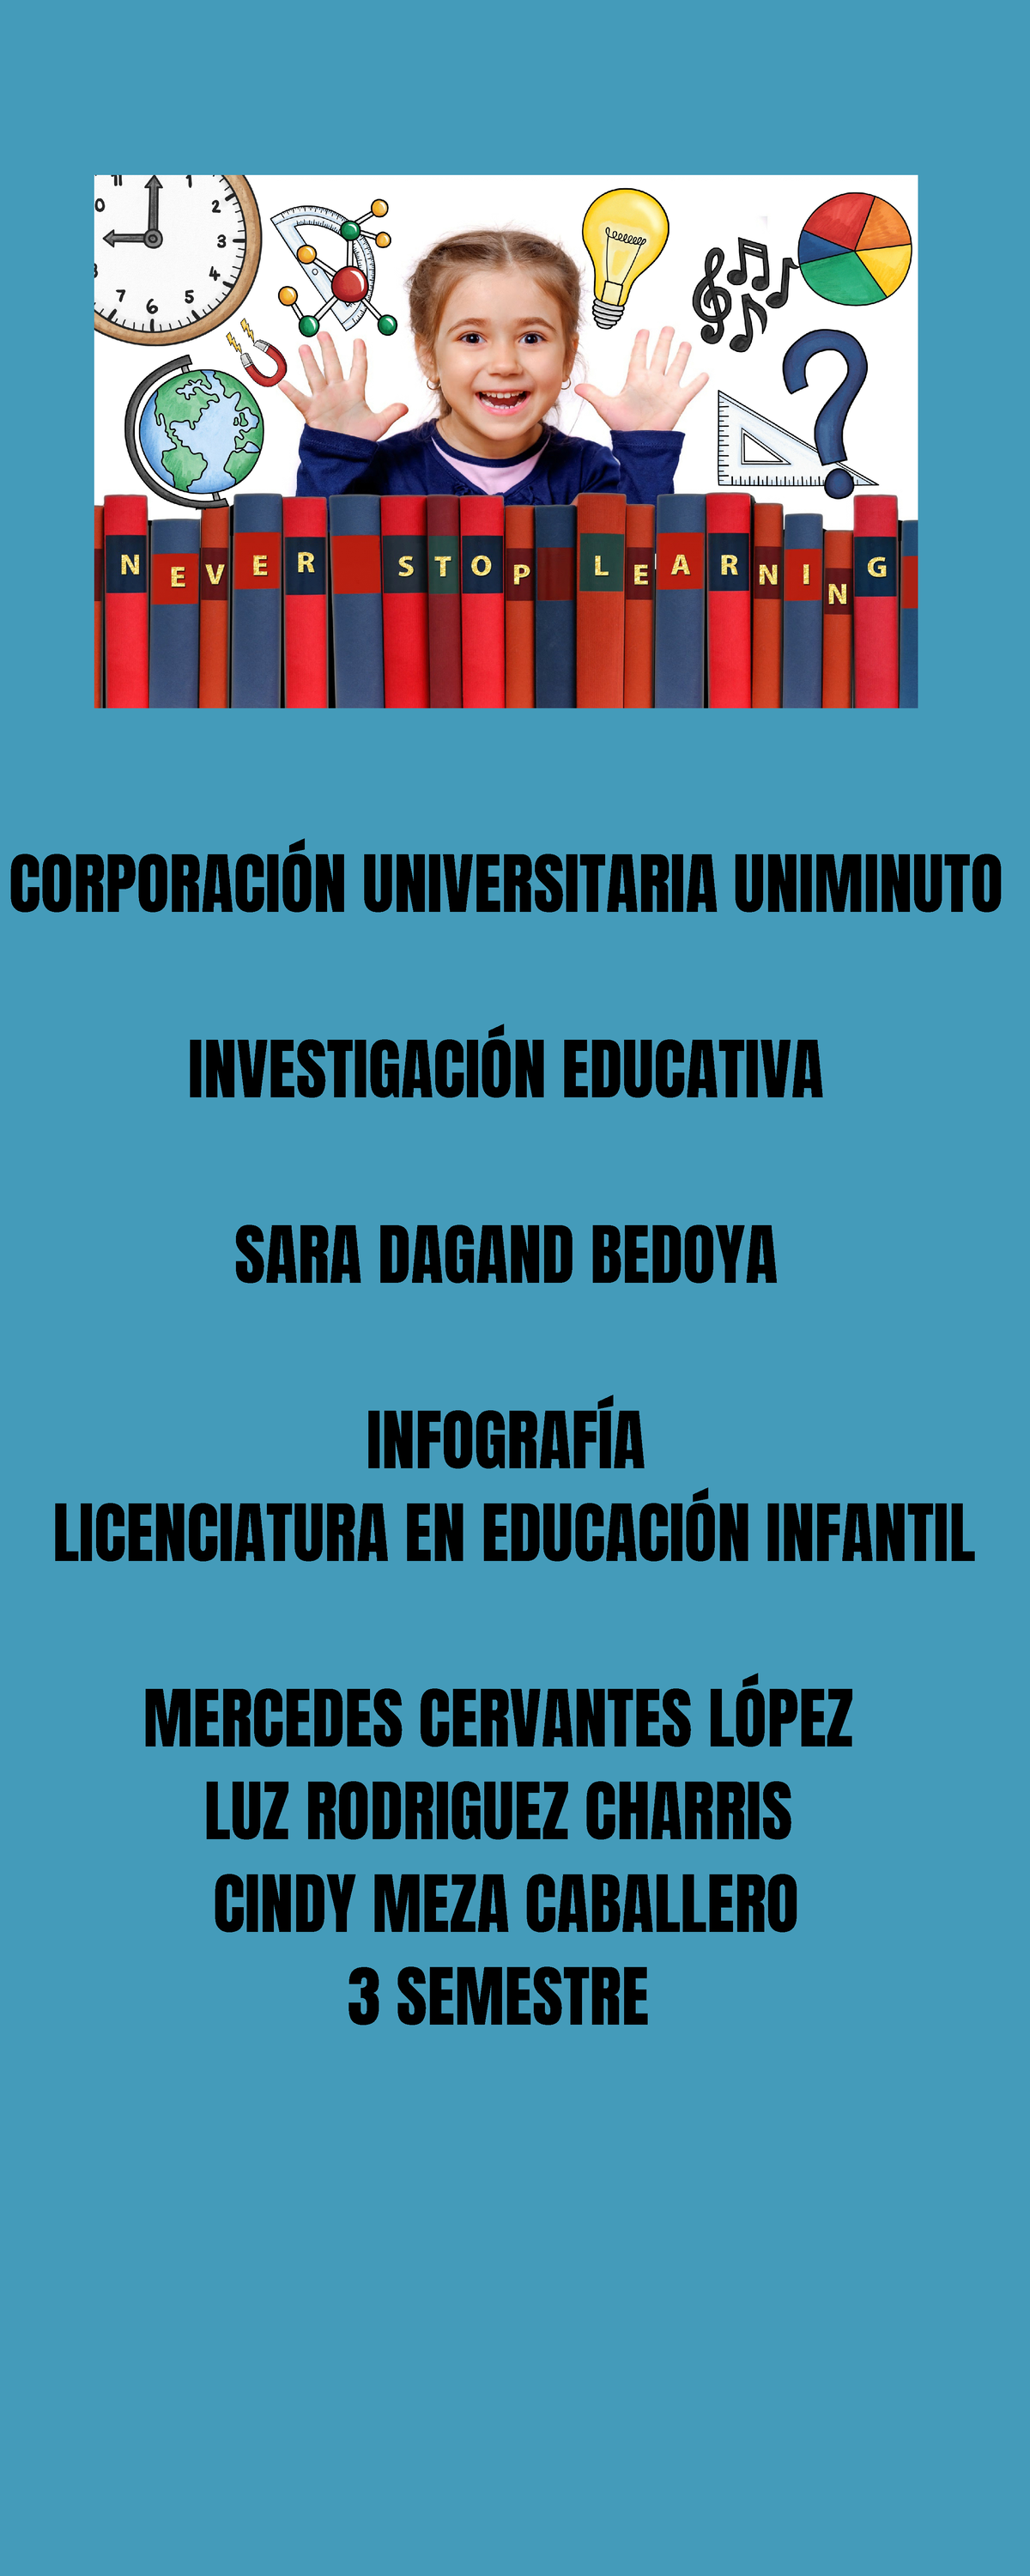 Diálogos Y Campos De Investigación Educativa CorporaciÓn Universitaria Uniminuto InvestigaciÓn 5170